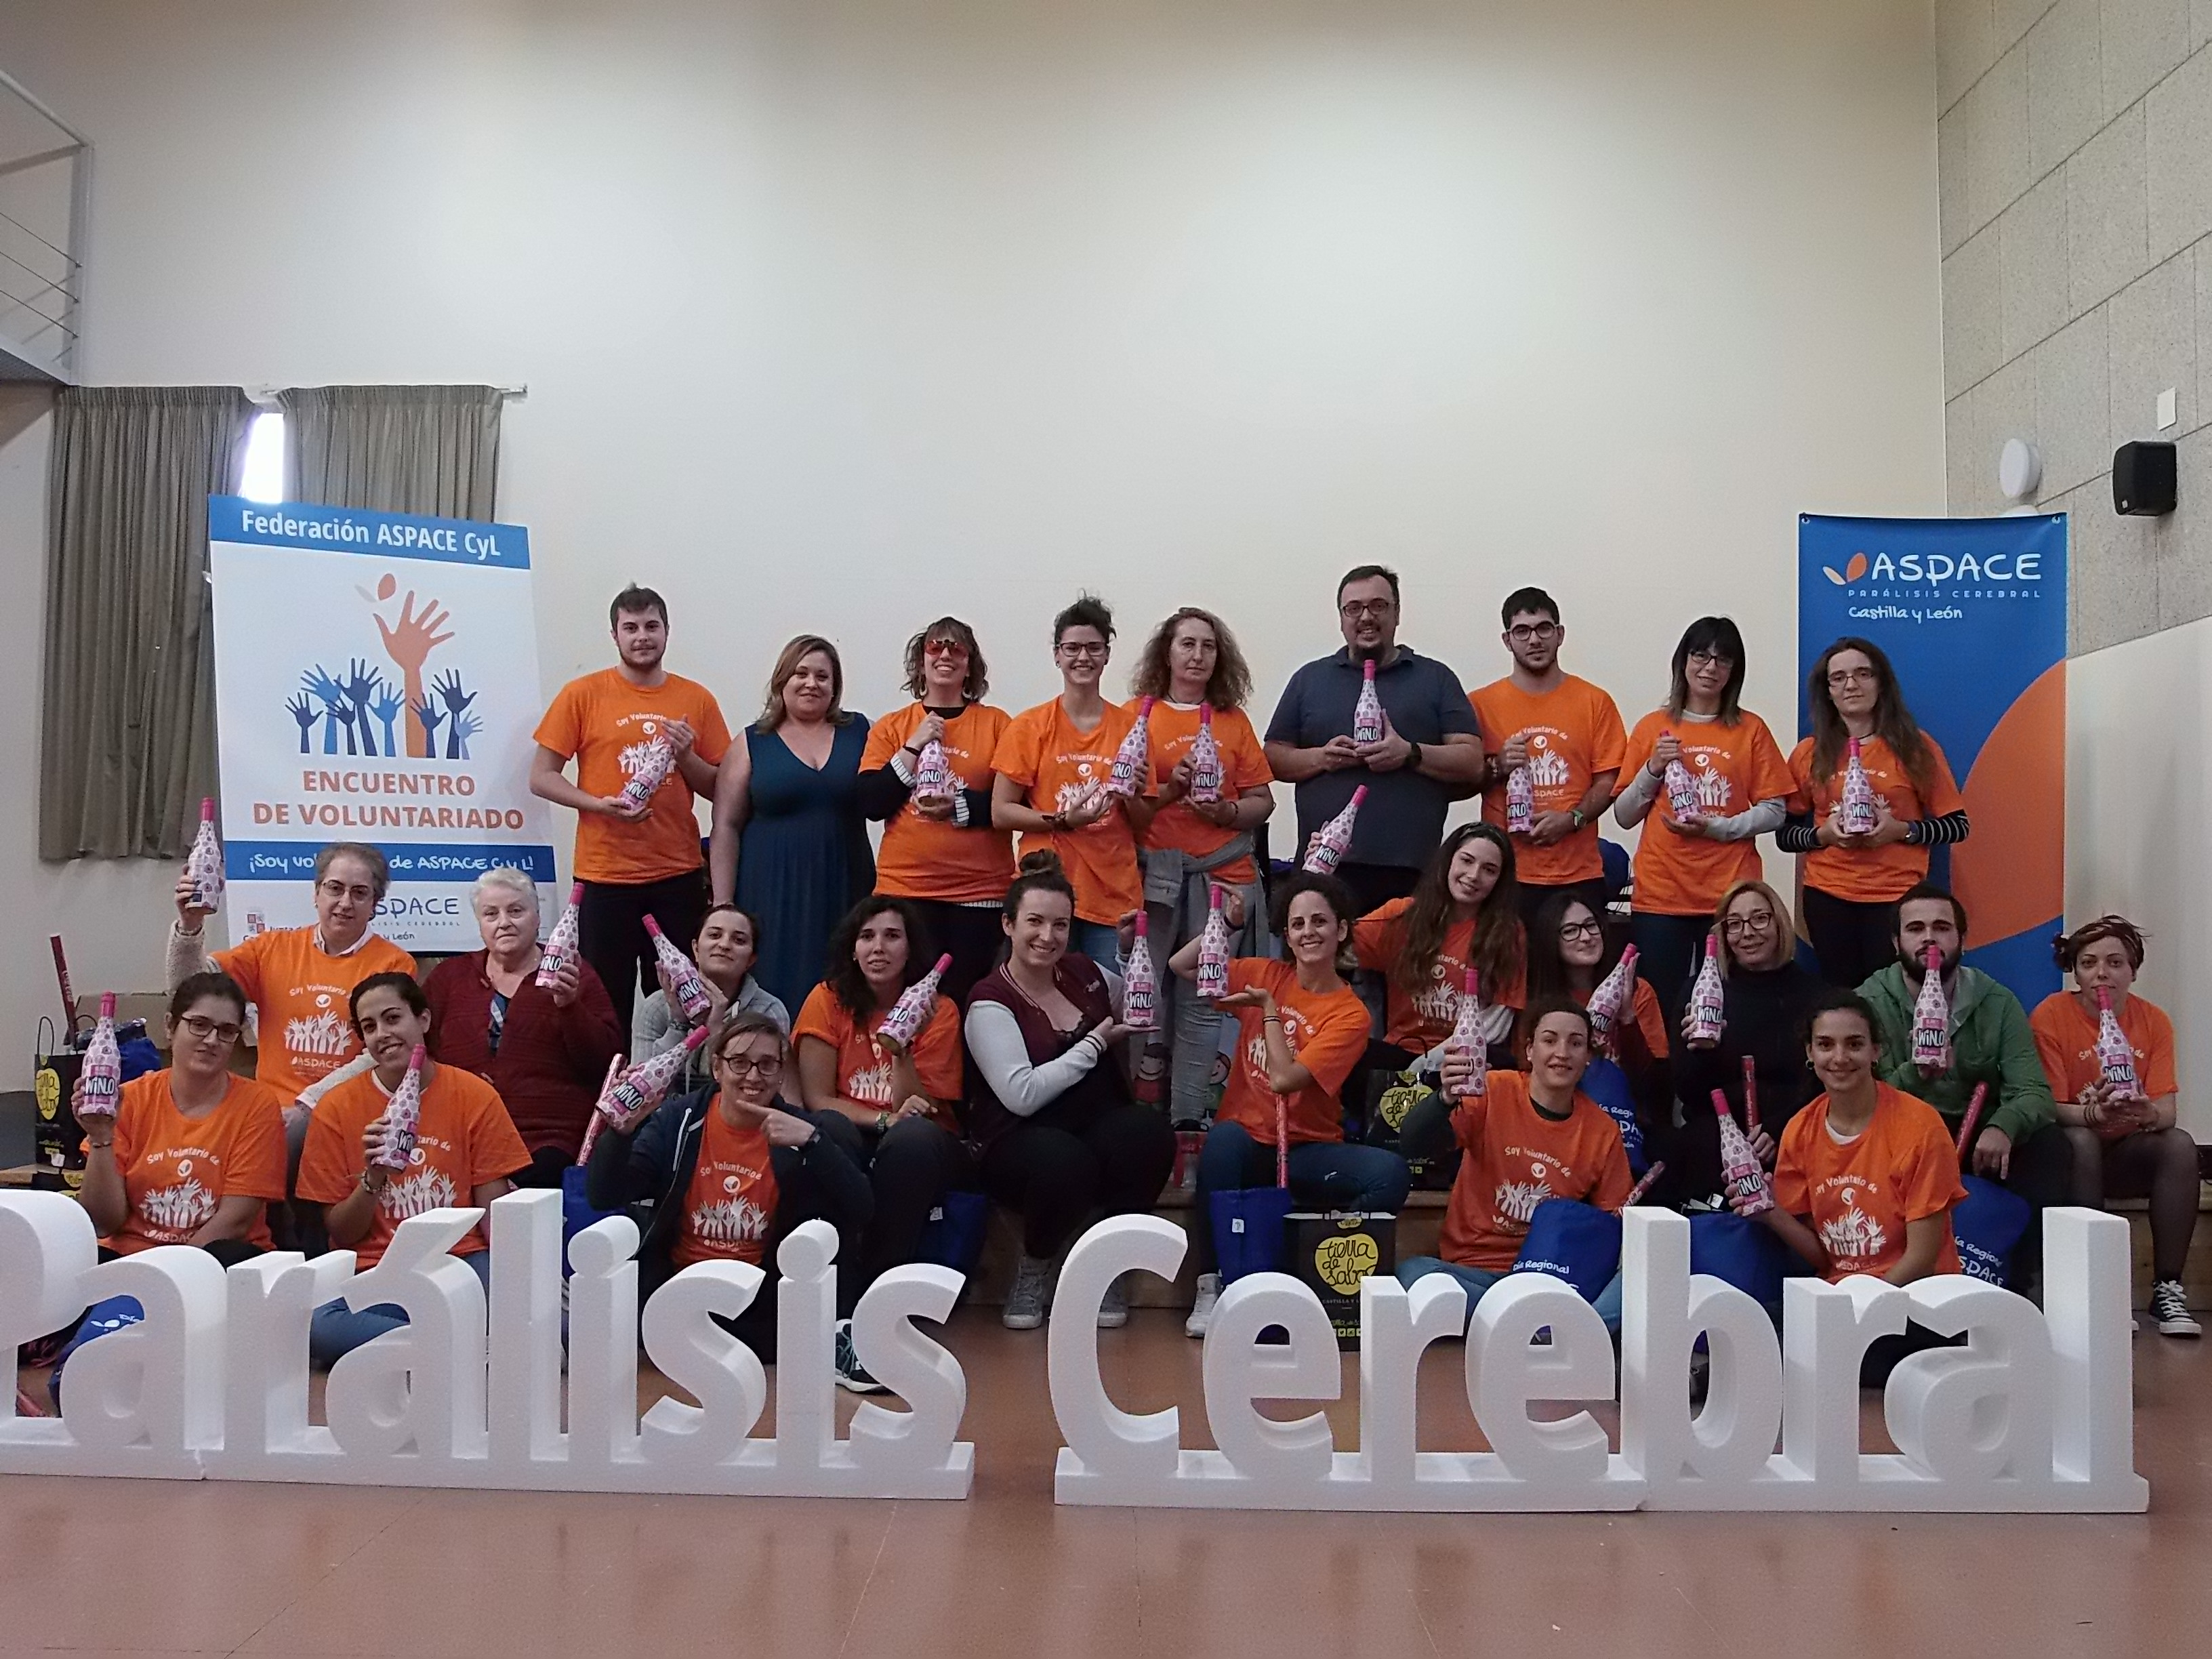 Encuentro de Voluntariado 2017 (Valladolid)